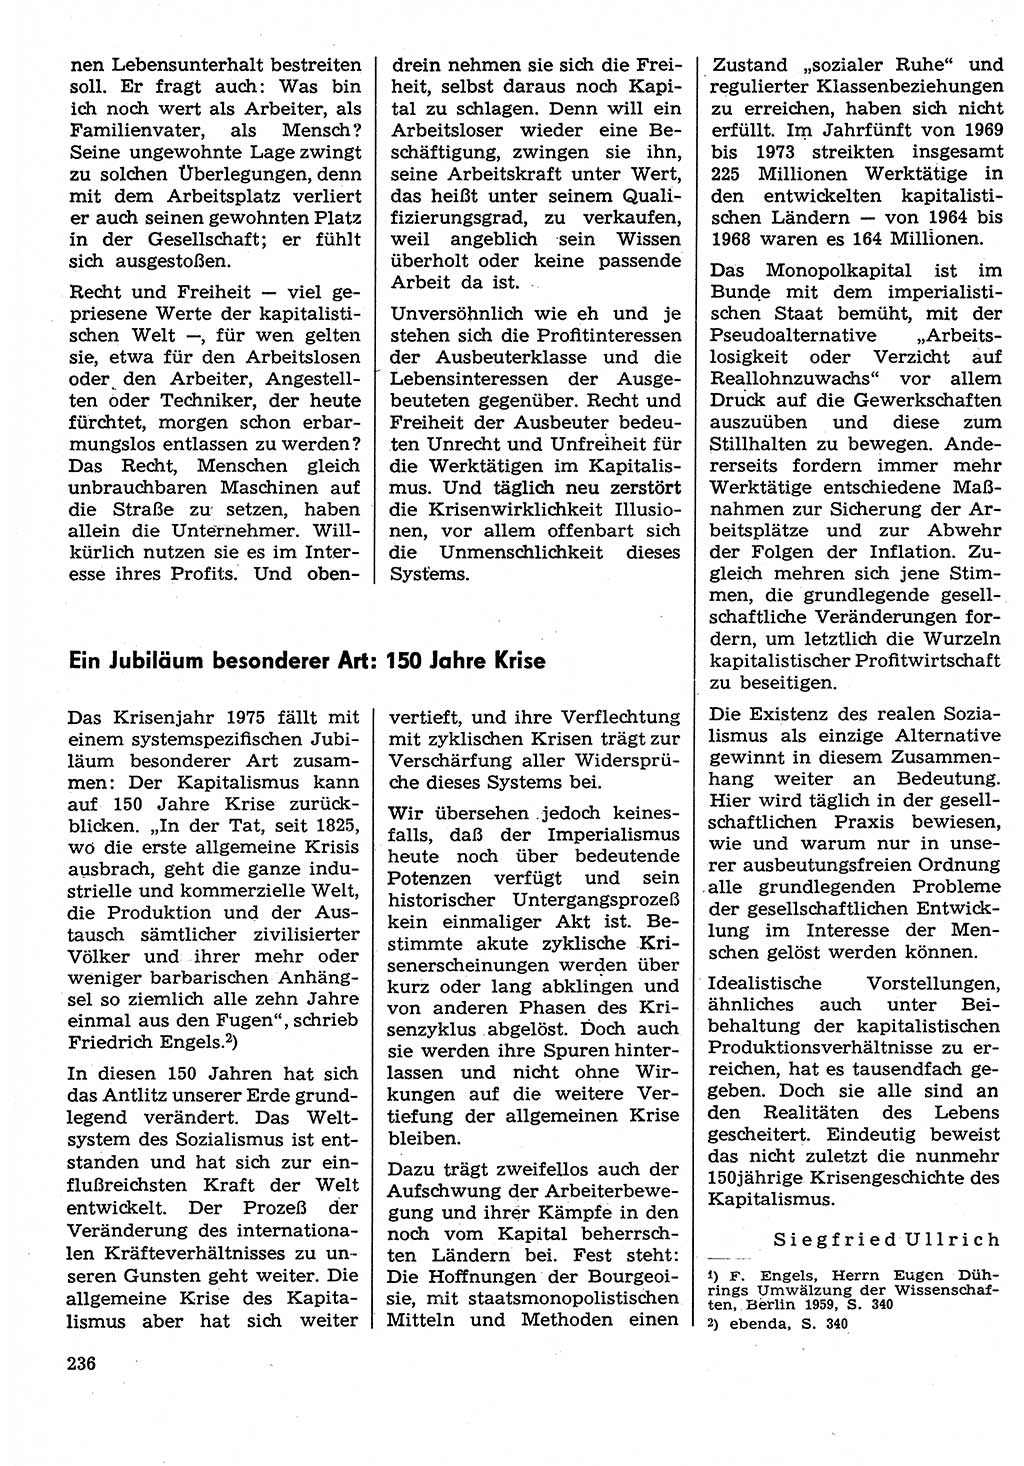 Neuer Weg (NW), Organ des Zentralkomitees (ZK) der SED (Sozialistische Einheitspartei Deutschlands) für Fragen des Parteilebens, 30. Jahrgang [Deutsche Demokratische Republik (DDR)] 1975, Seite 236 (NW ZK SED DDR 1975, S. 236)